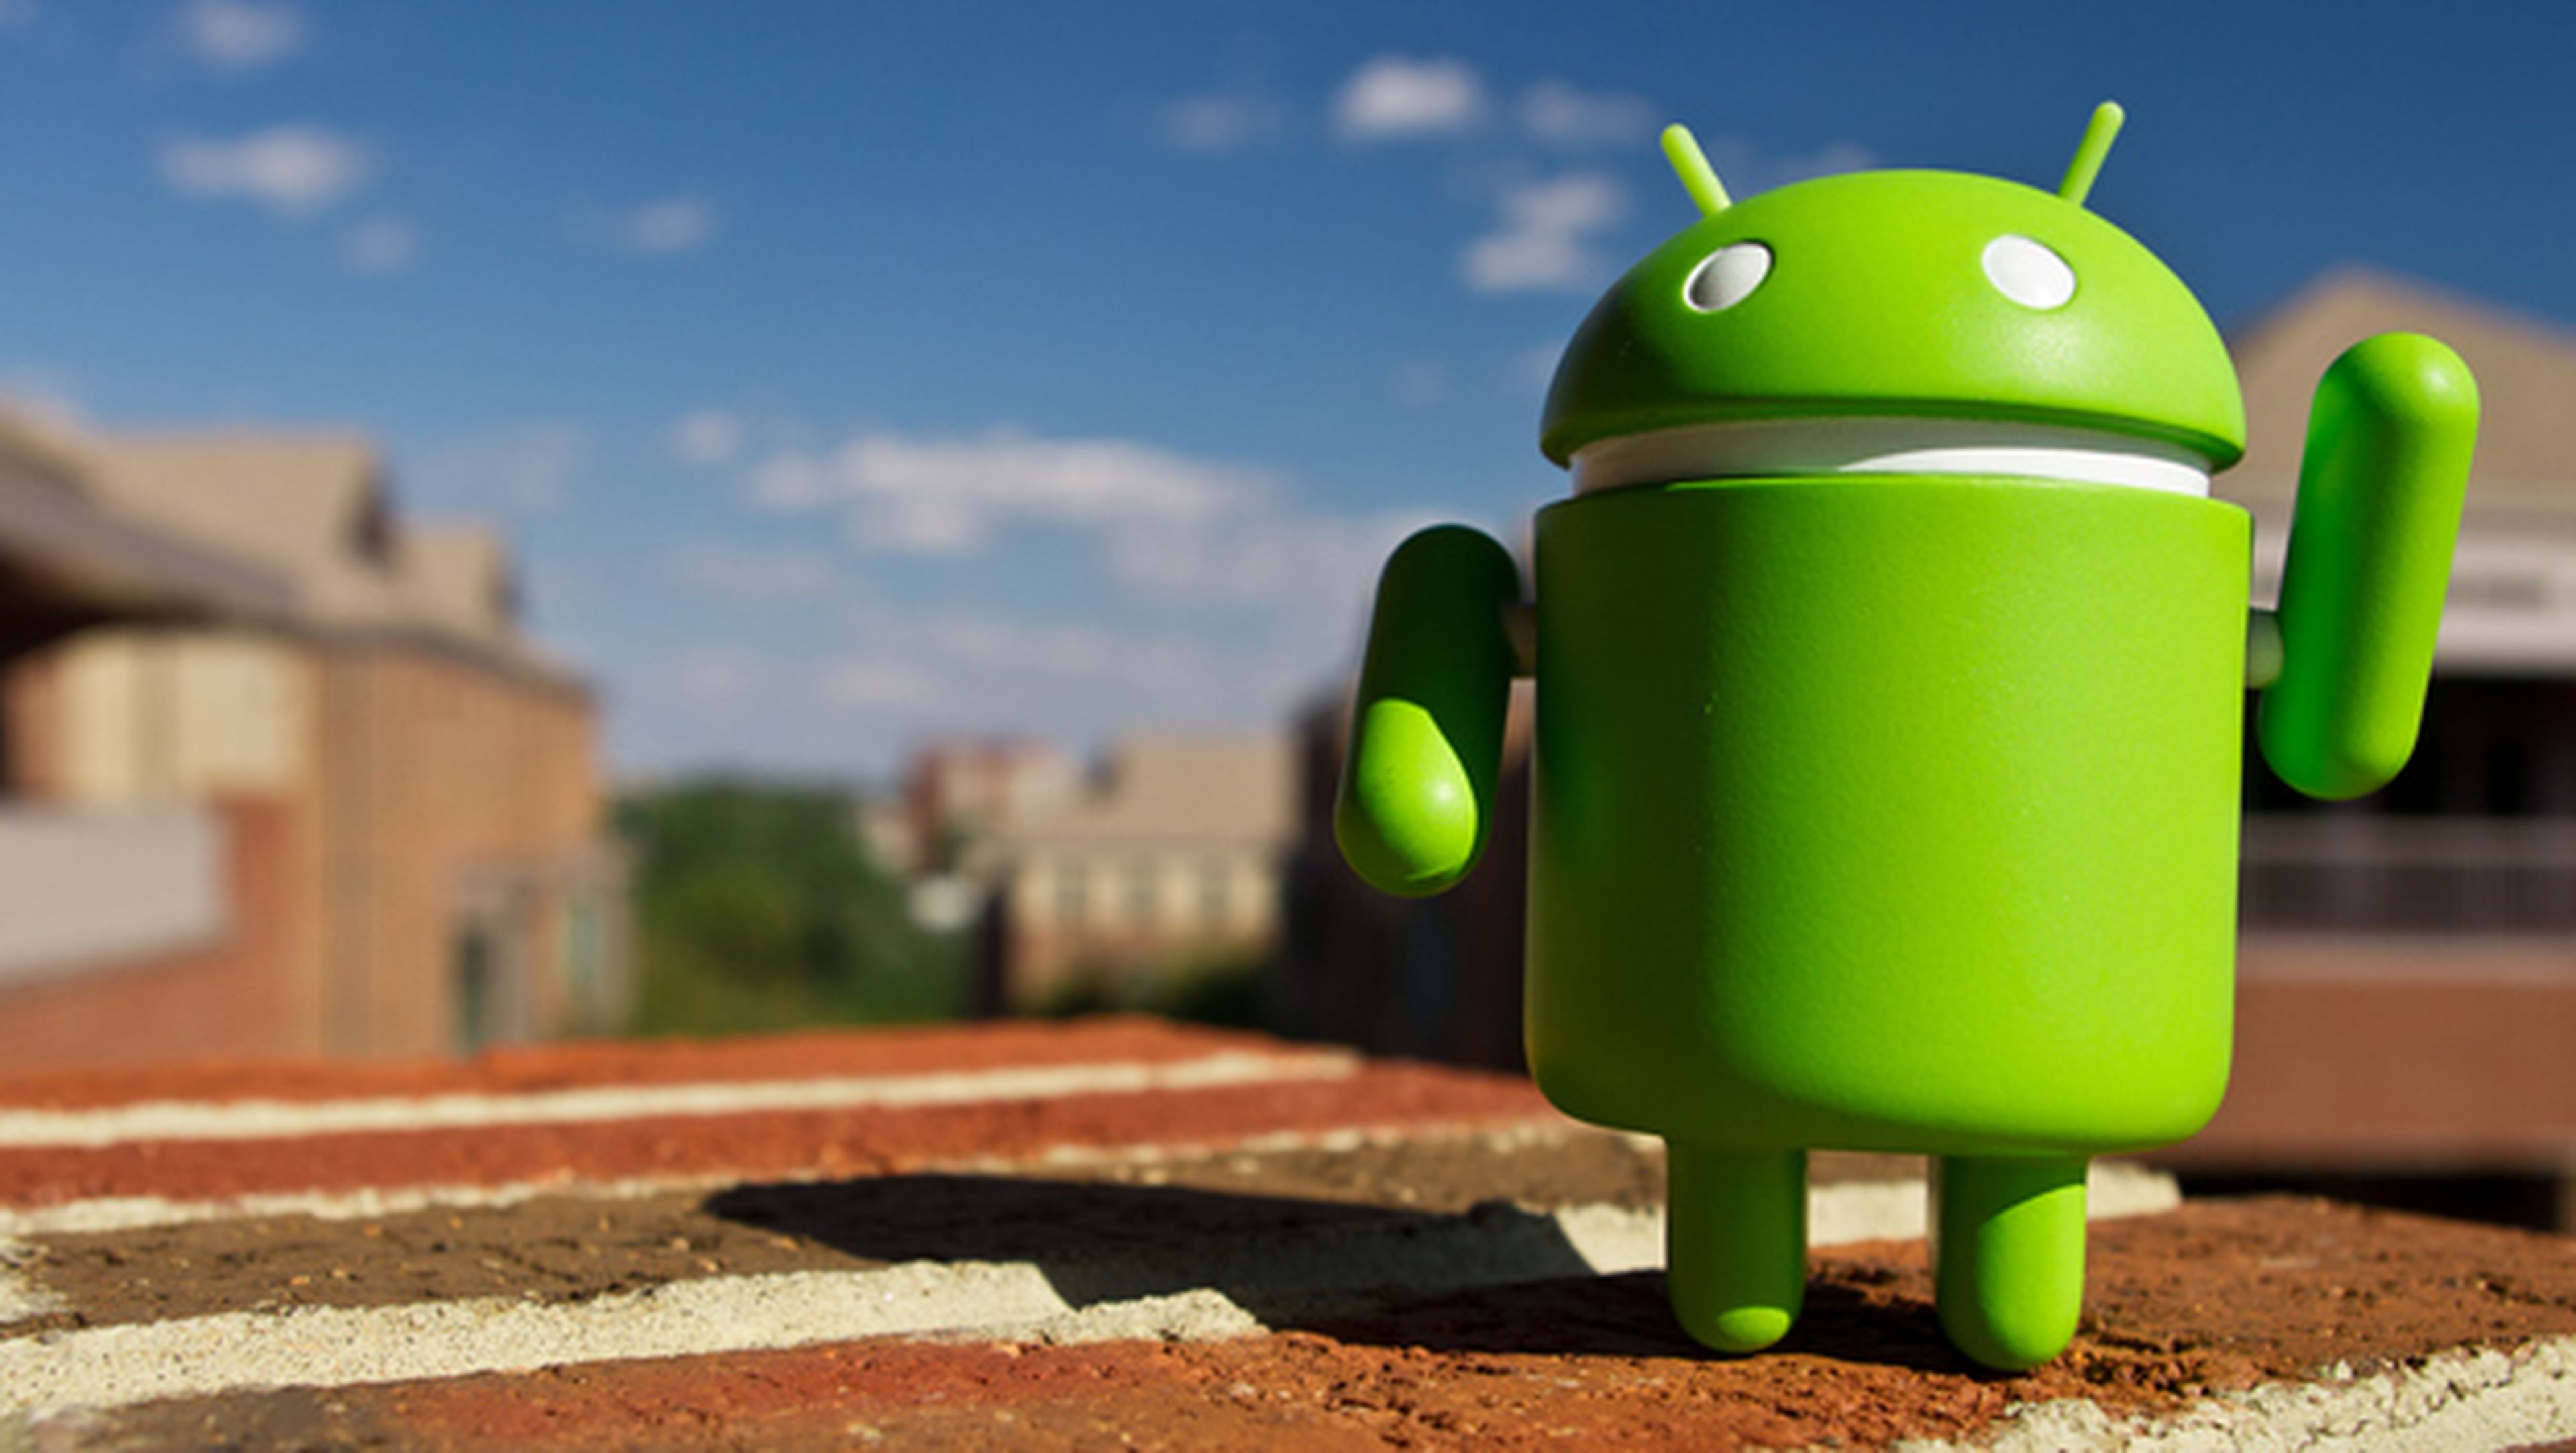 Android o iOS: ¿qué sistema operativo es más seguro?